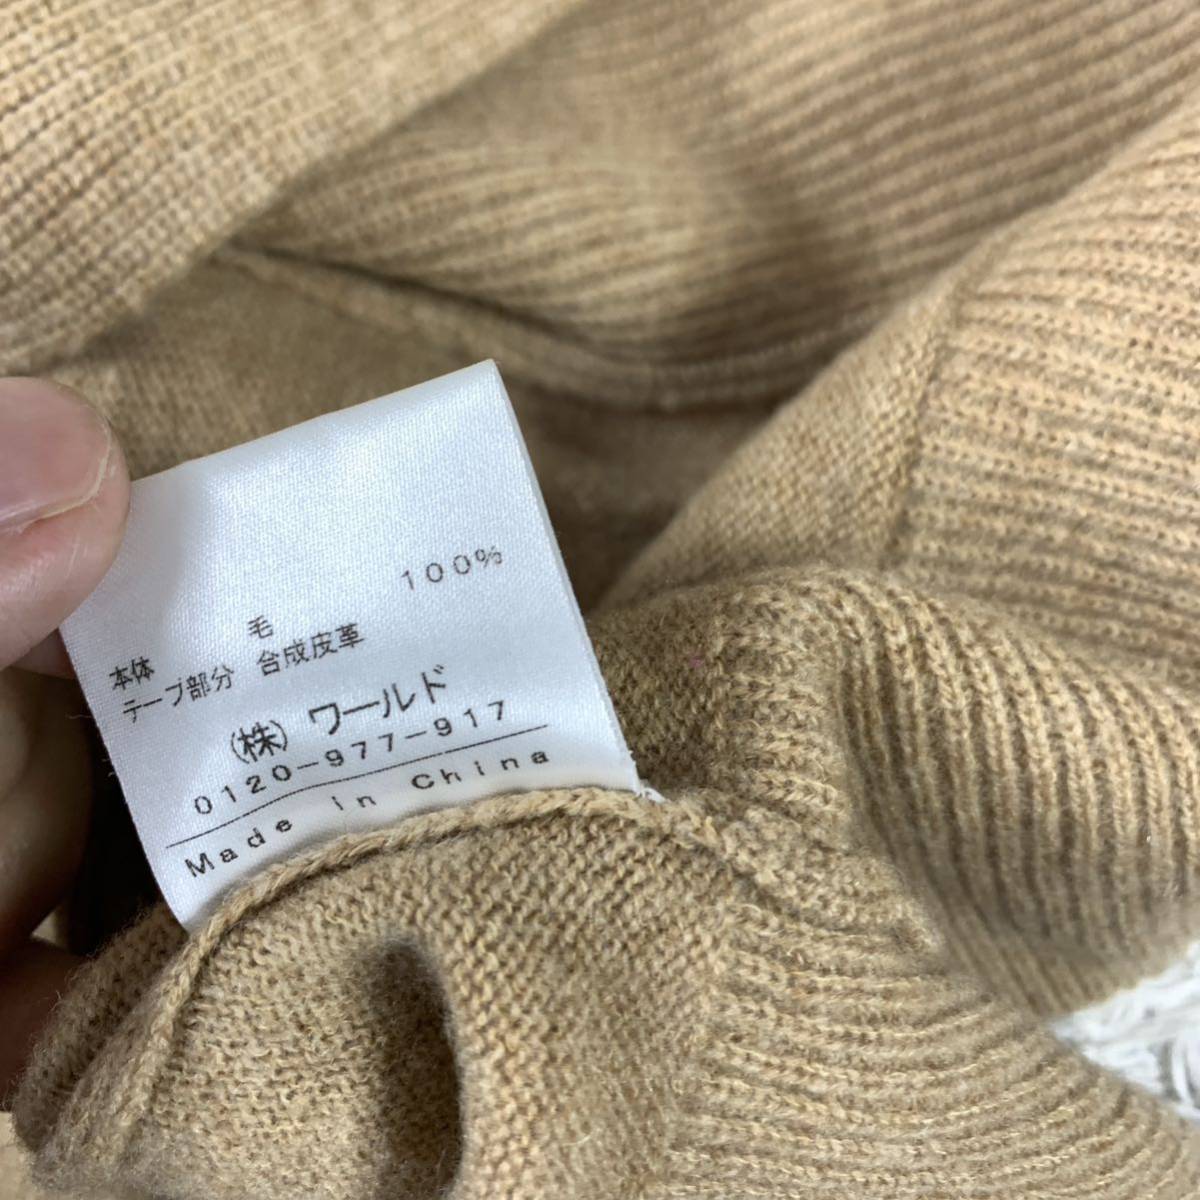  Indivi knitted cardigan duffle coat beige wool 38 YA5018